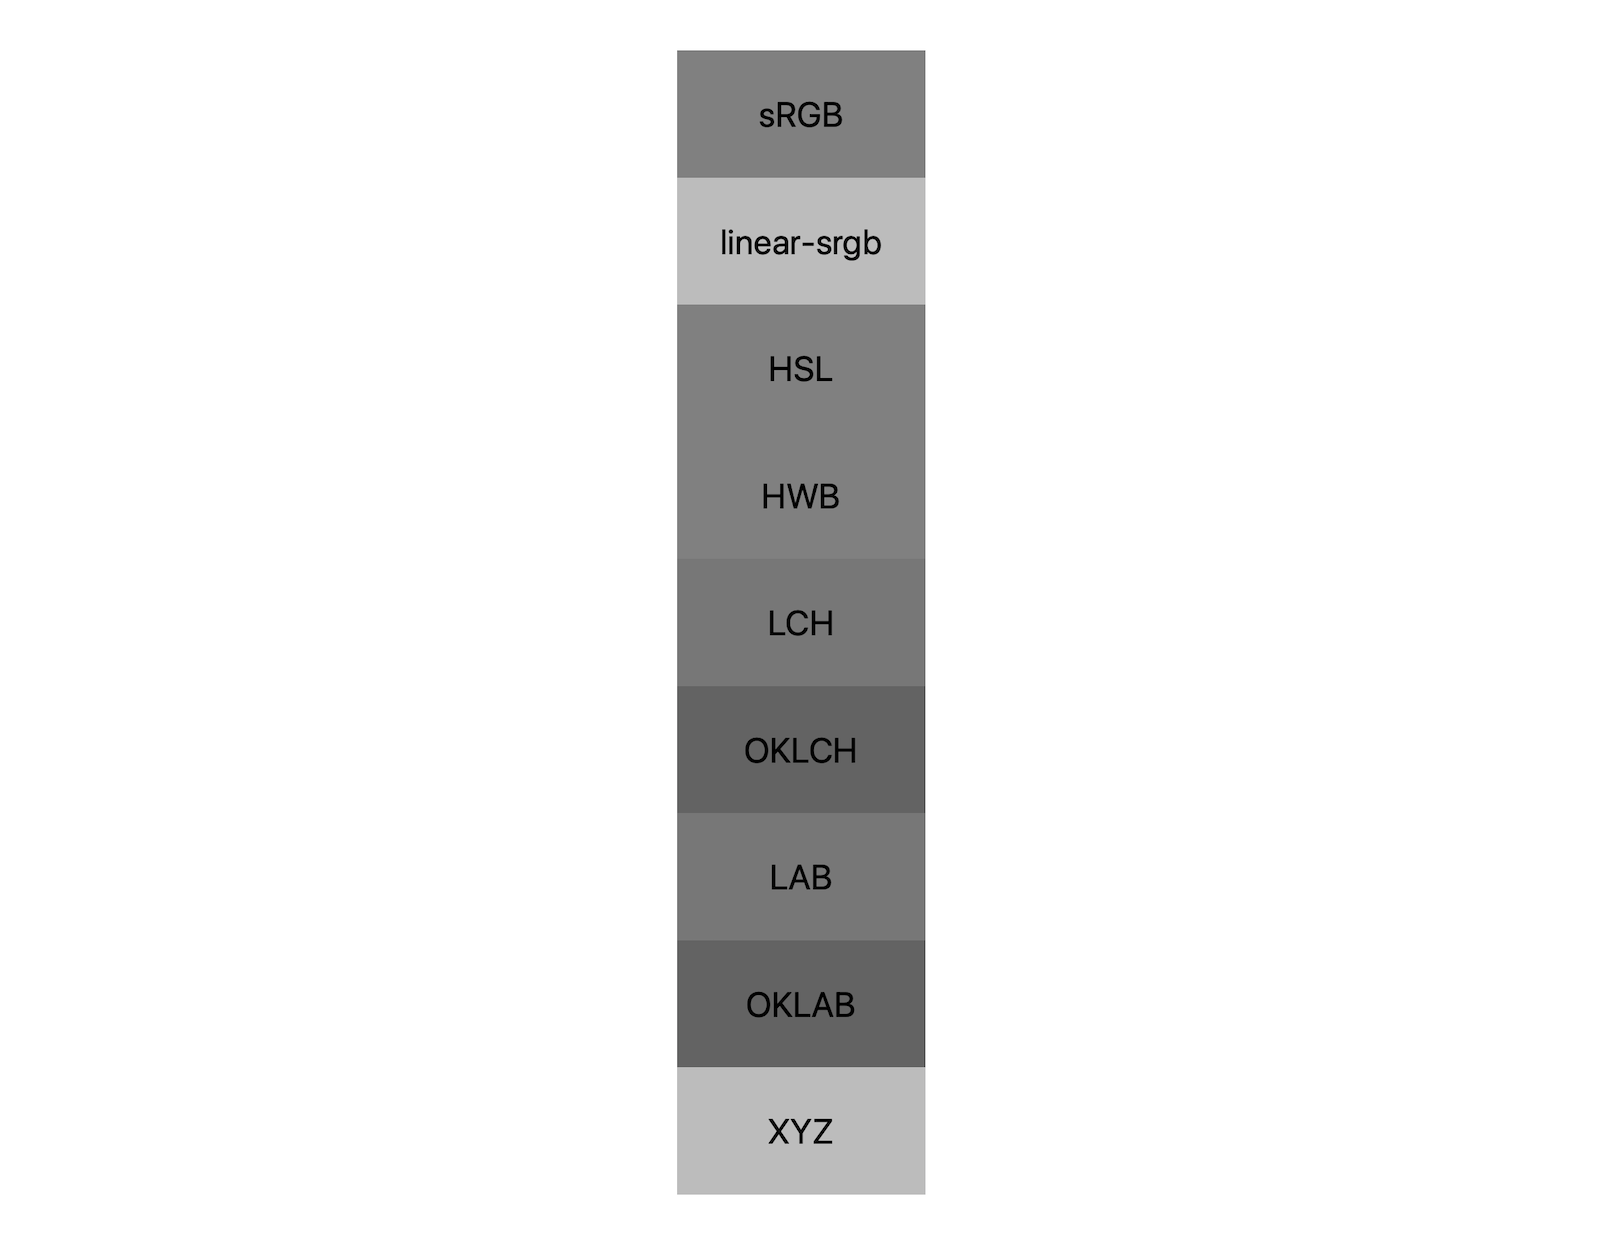 7 espacios de color (srgb, linear-srgb, lch, oklch, lab, oklab, xyz) cada uno muestra sus resultados de la combinación de blanco y negro. Se muestran aproximadamente 5 tonos diferentes, lo que demuestra que cada espacio de color se mezclará incluso con un gris de manera diferente.